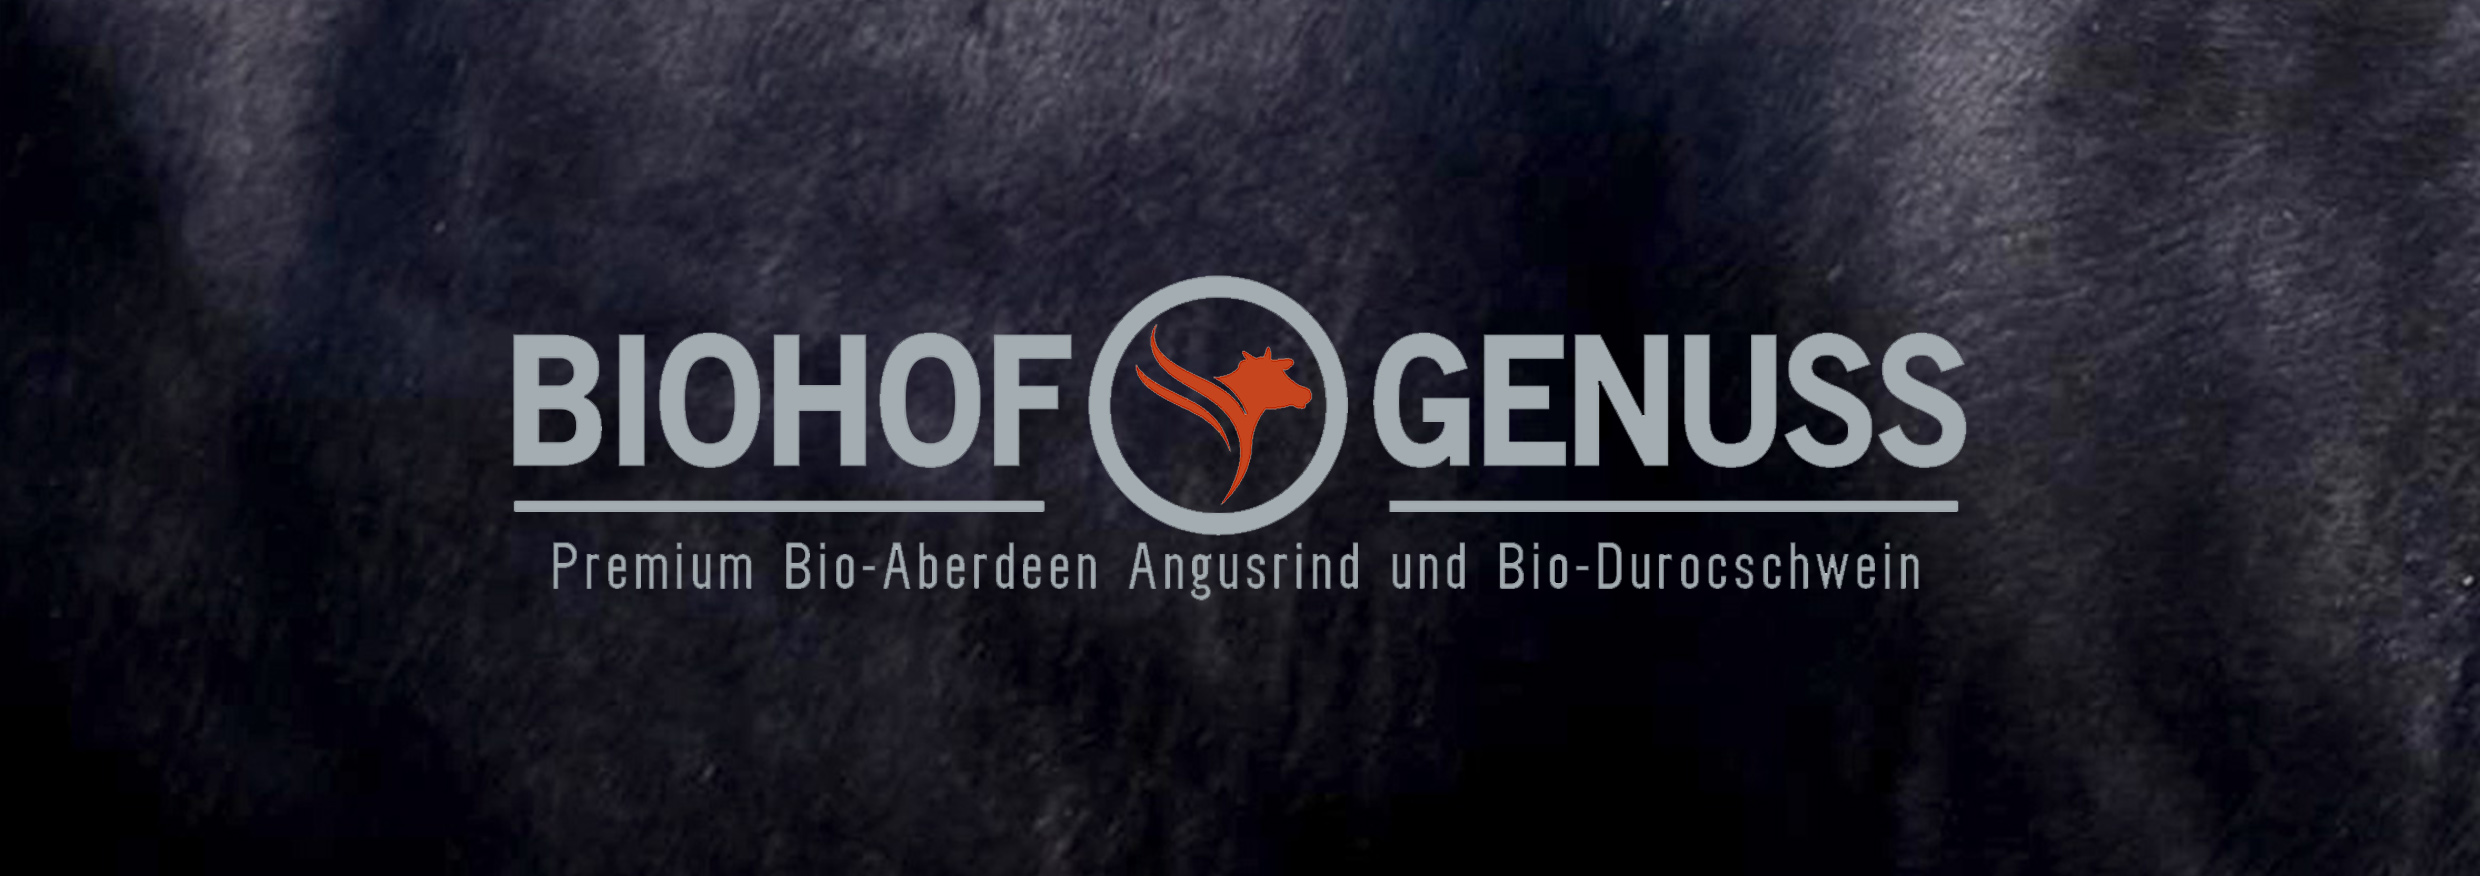 Bio Hofgenuss 